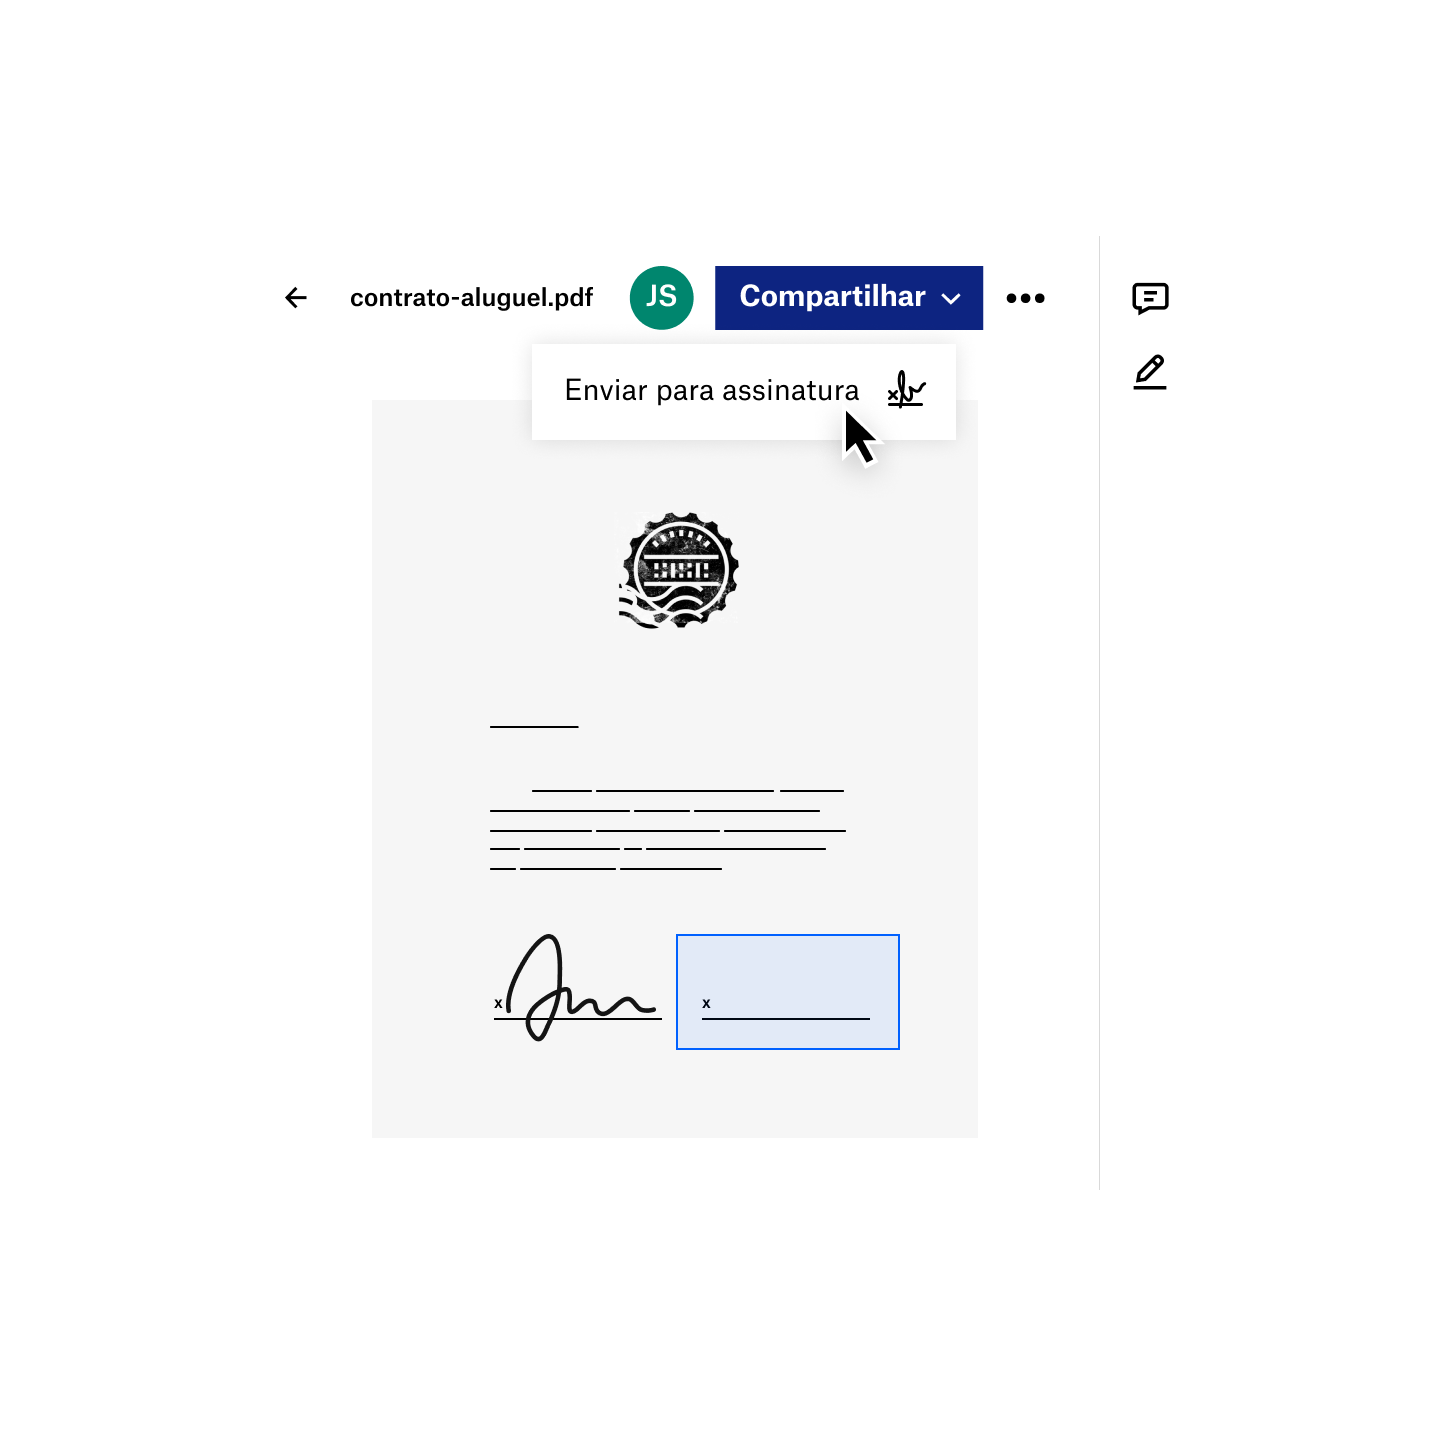 Um usuário compartilha um PDF para assinatura eletrônica no Dropbox